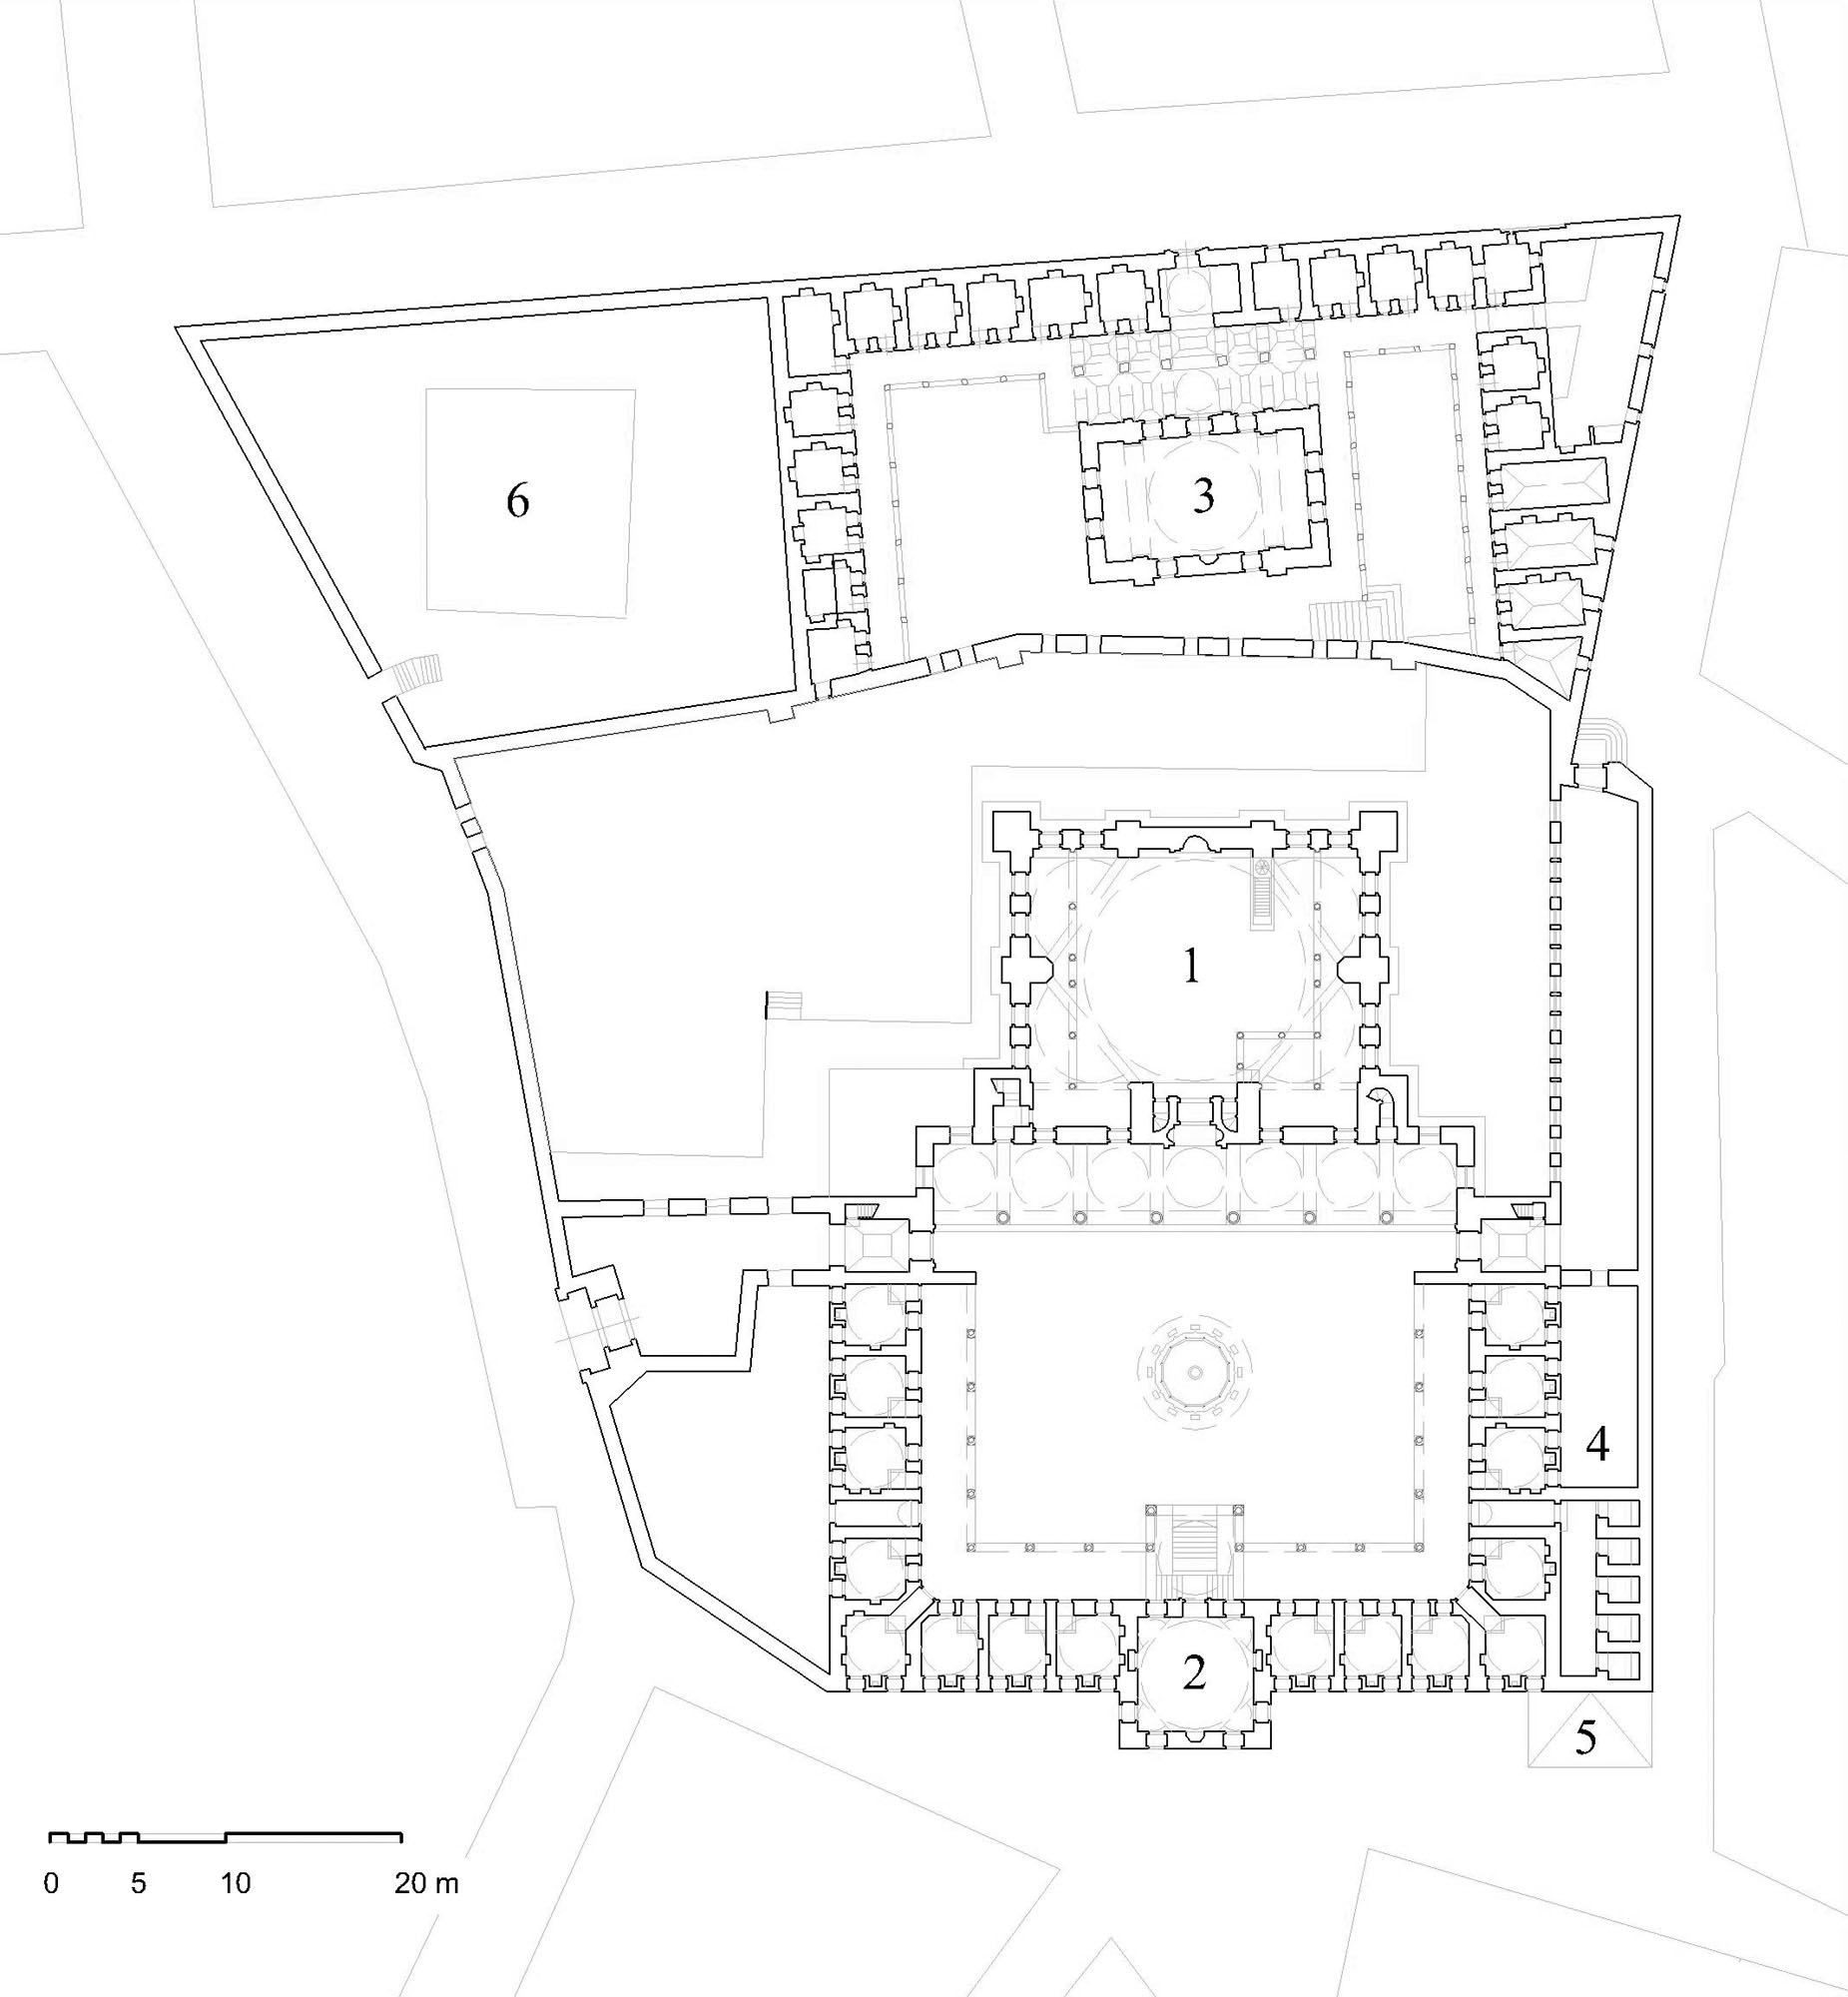 Floor plan of Sokollu Mehmed Pasa Complex at Kadirga